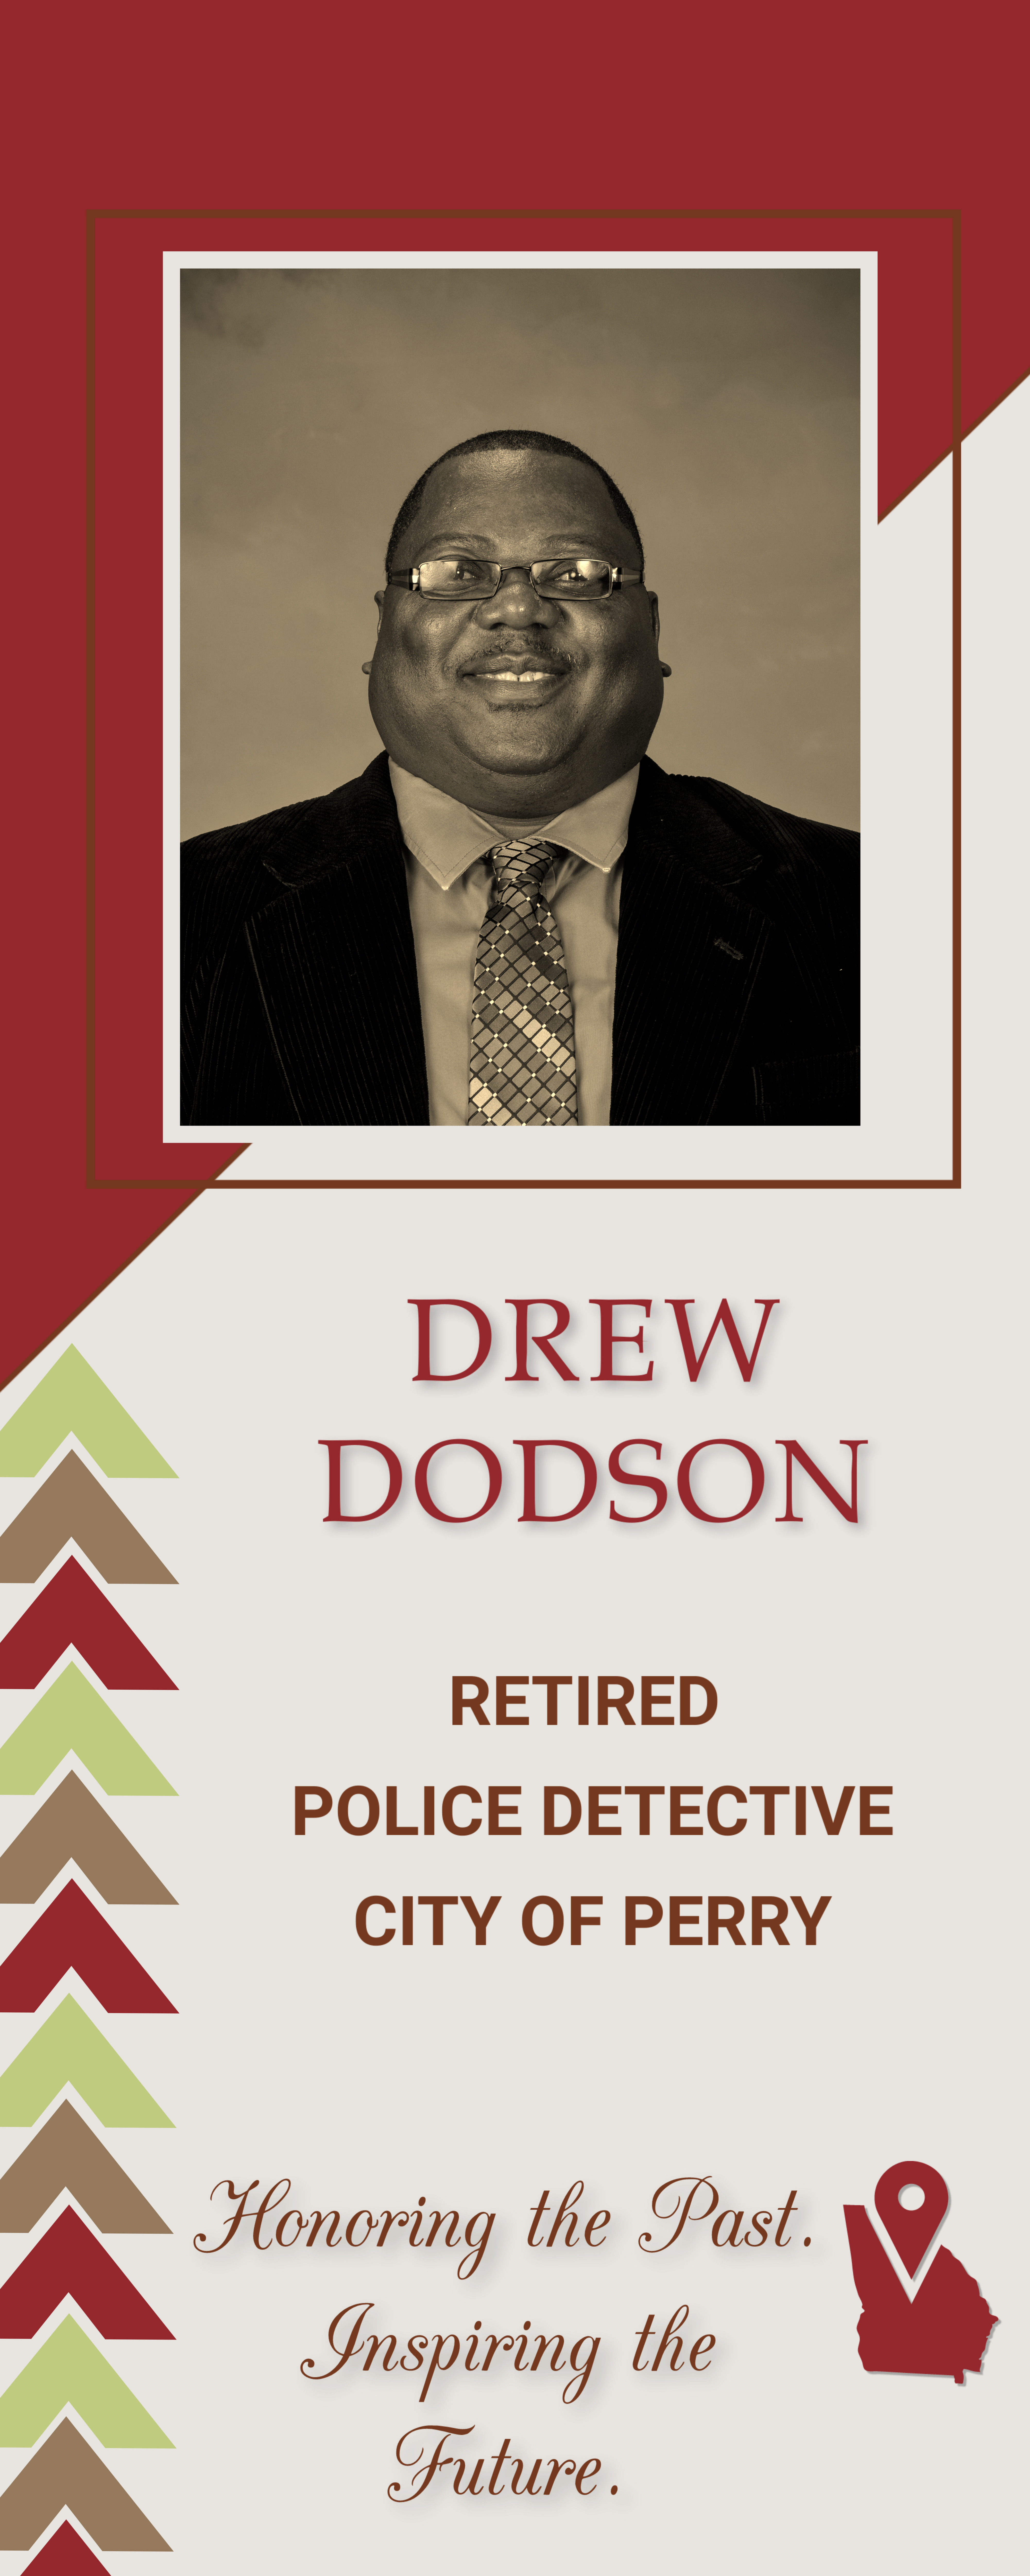 Drew Dodson